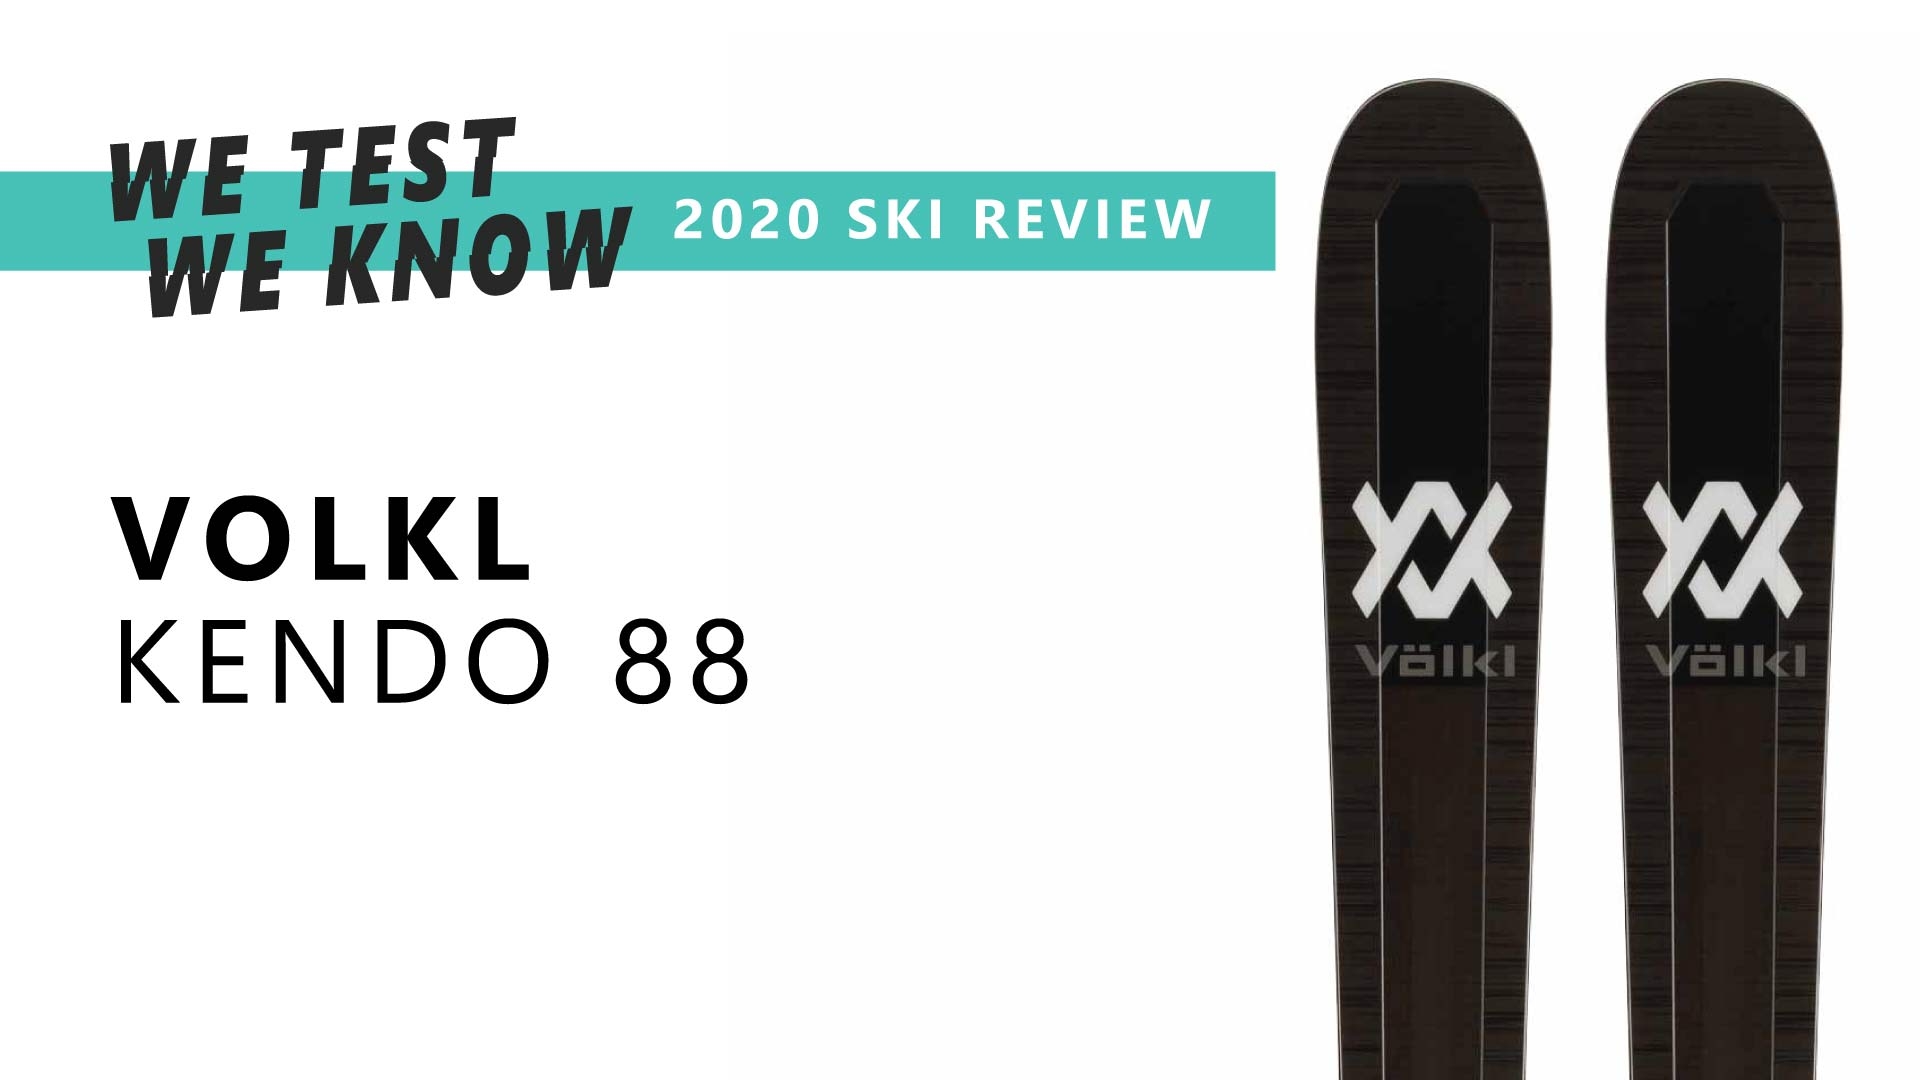 Volkl Kendo 88 - 2020 Ski Review